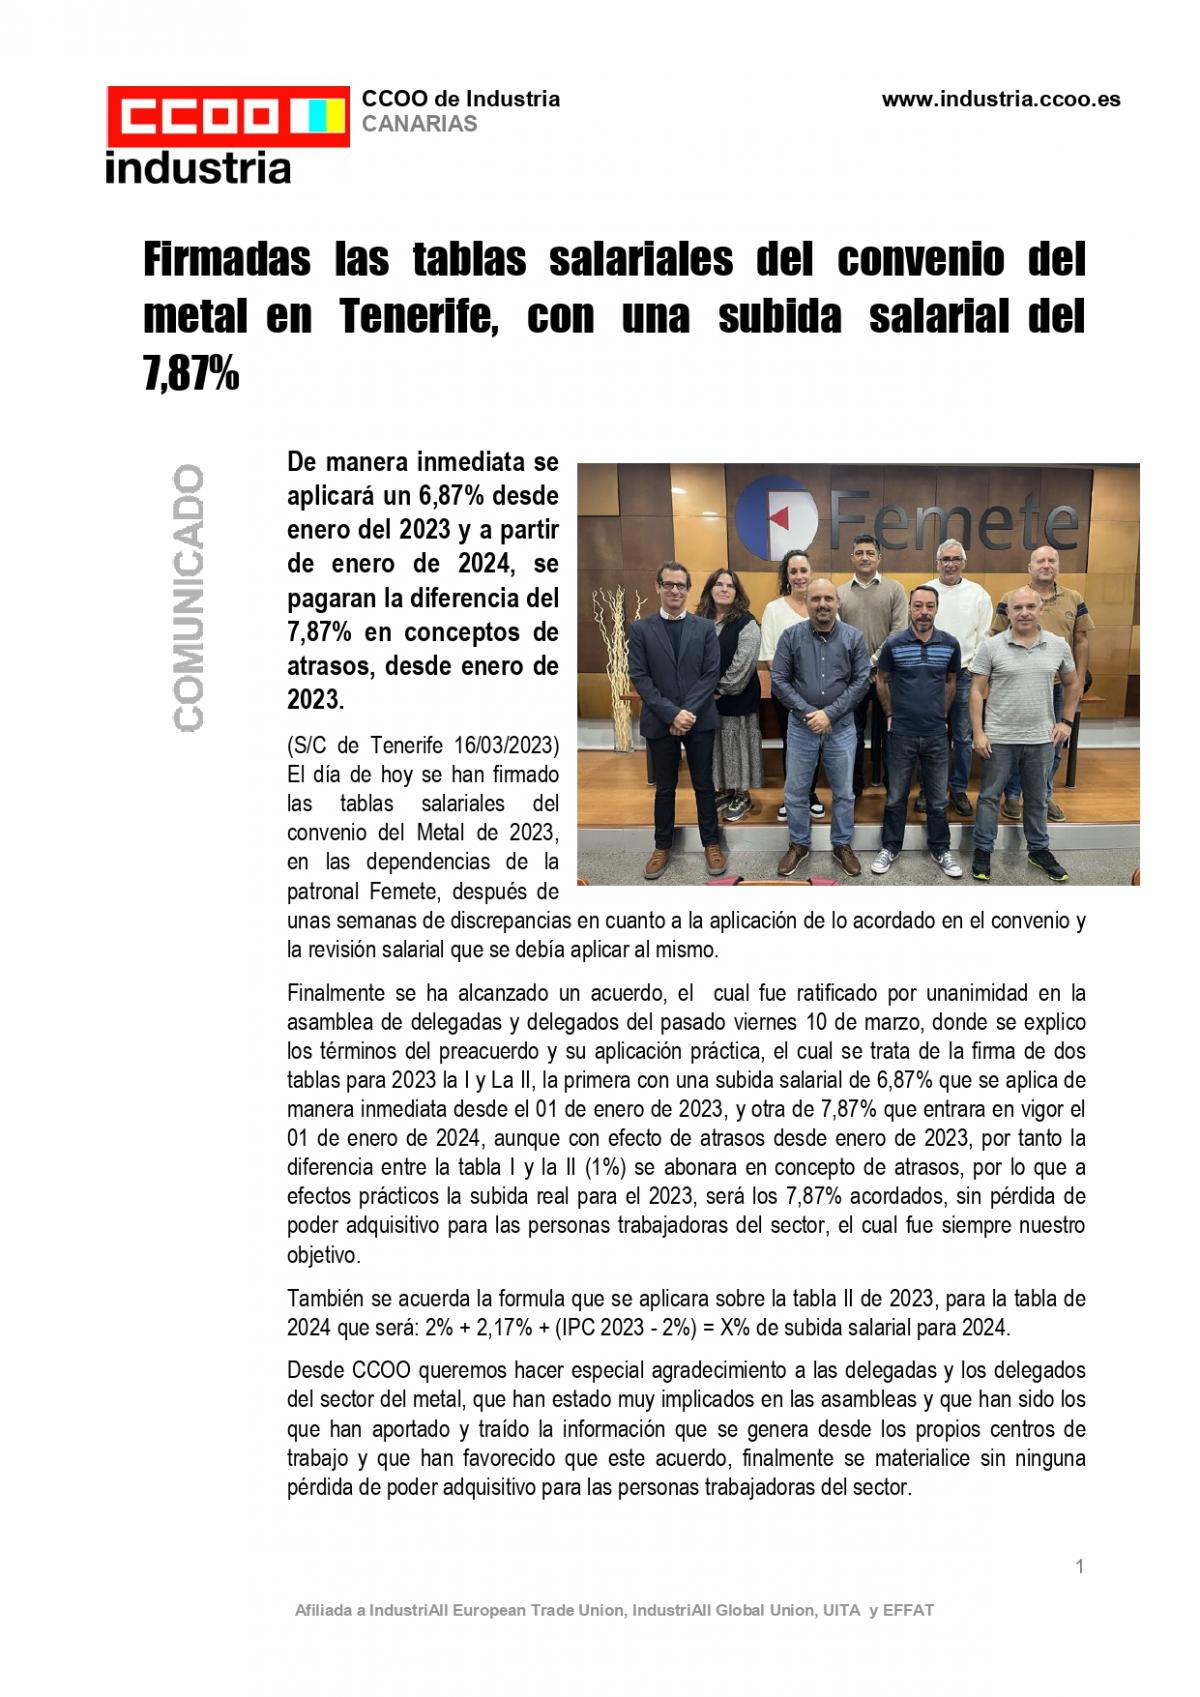 Firmadas las tablas salariales del convenio del metal en Tenerife, con una subida salarial del 7,87%